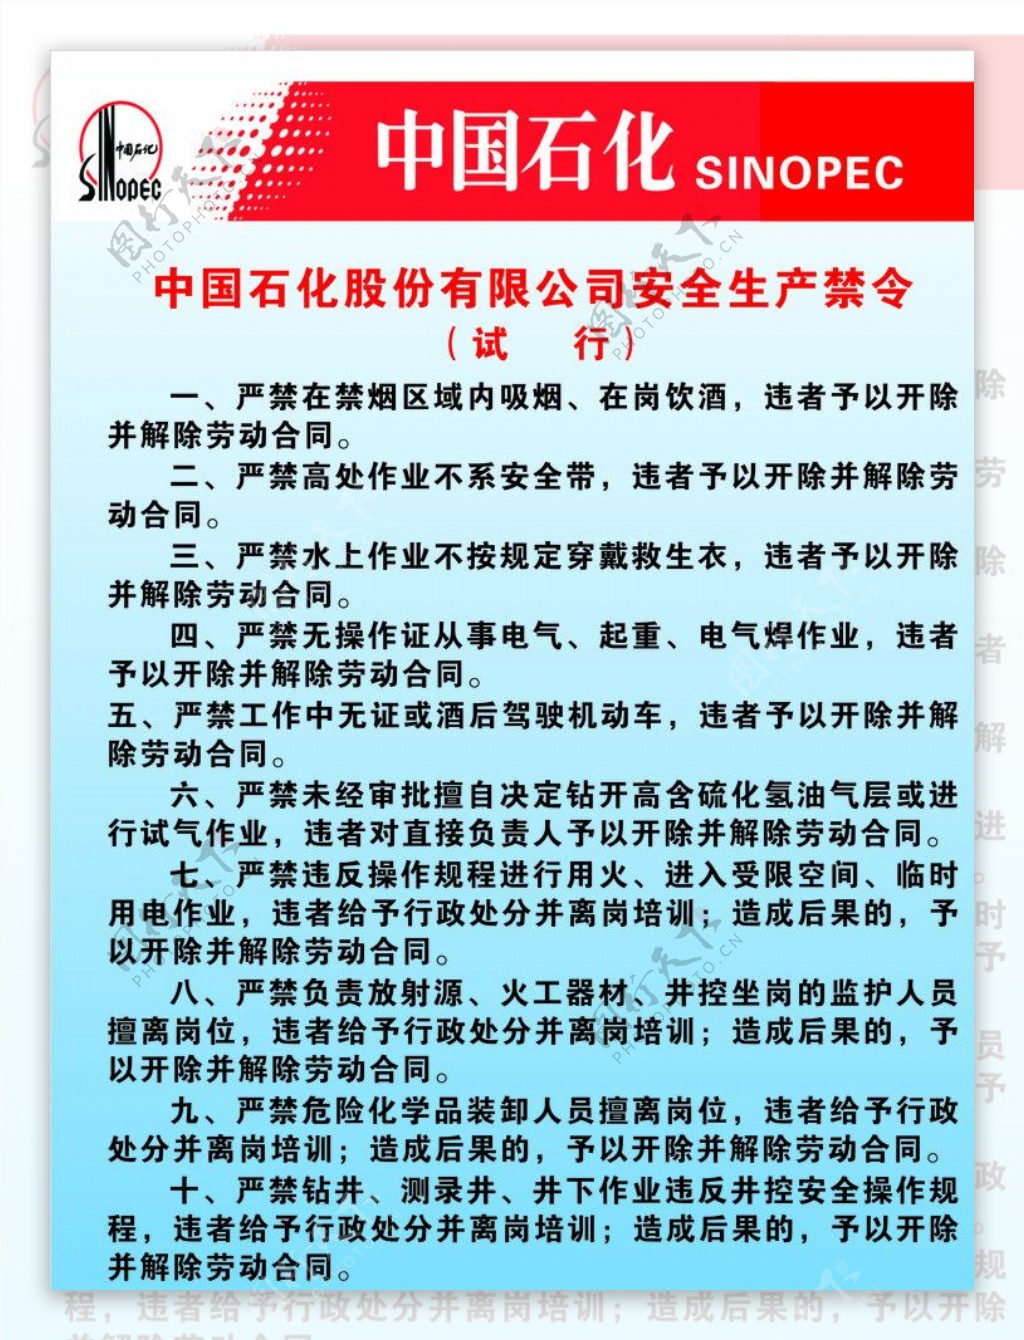 中国石化股份有限公司安全生产禁令制度牌图片